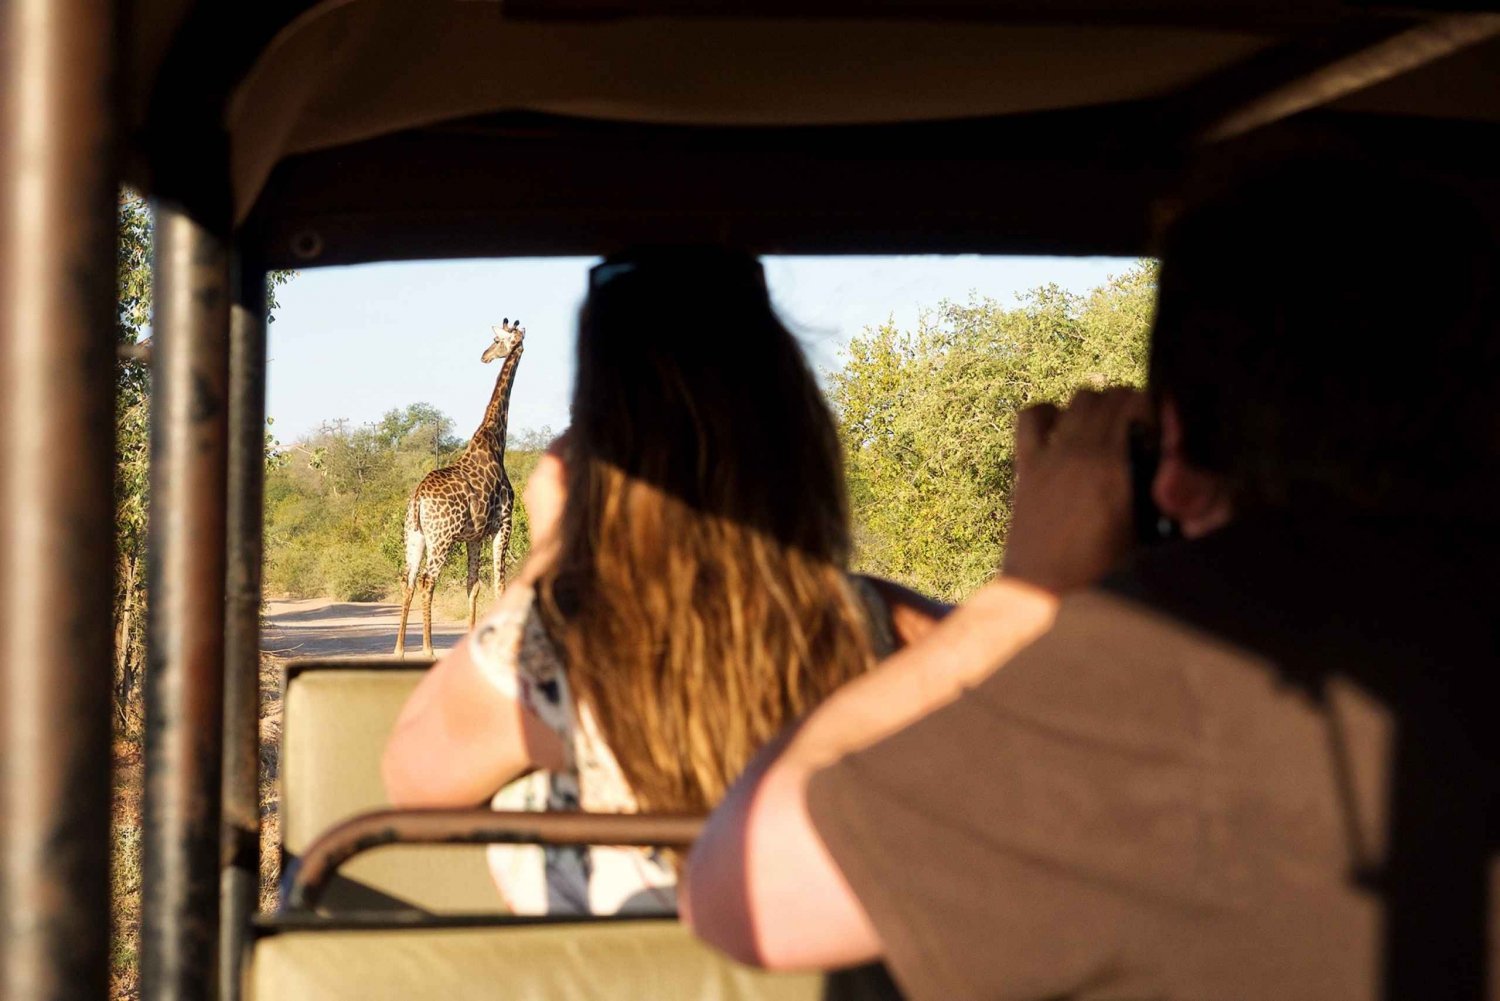 Au départ de Johannesburg : Safari économique de 3 jours dans le parc national Kruger